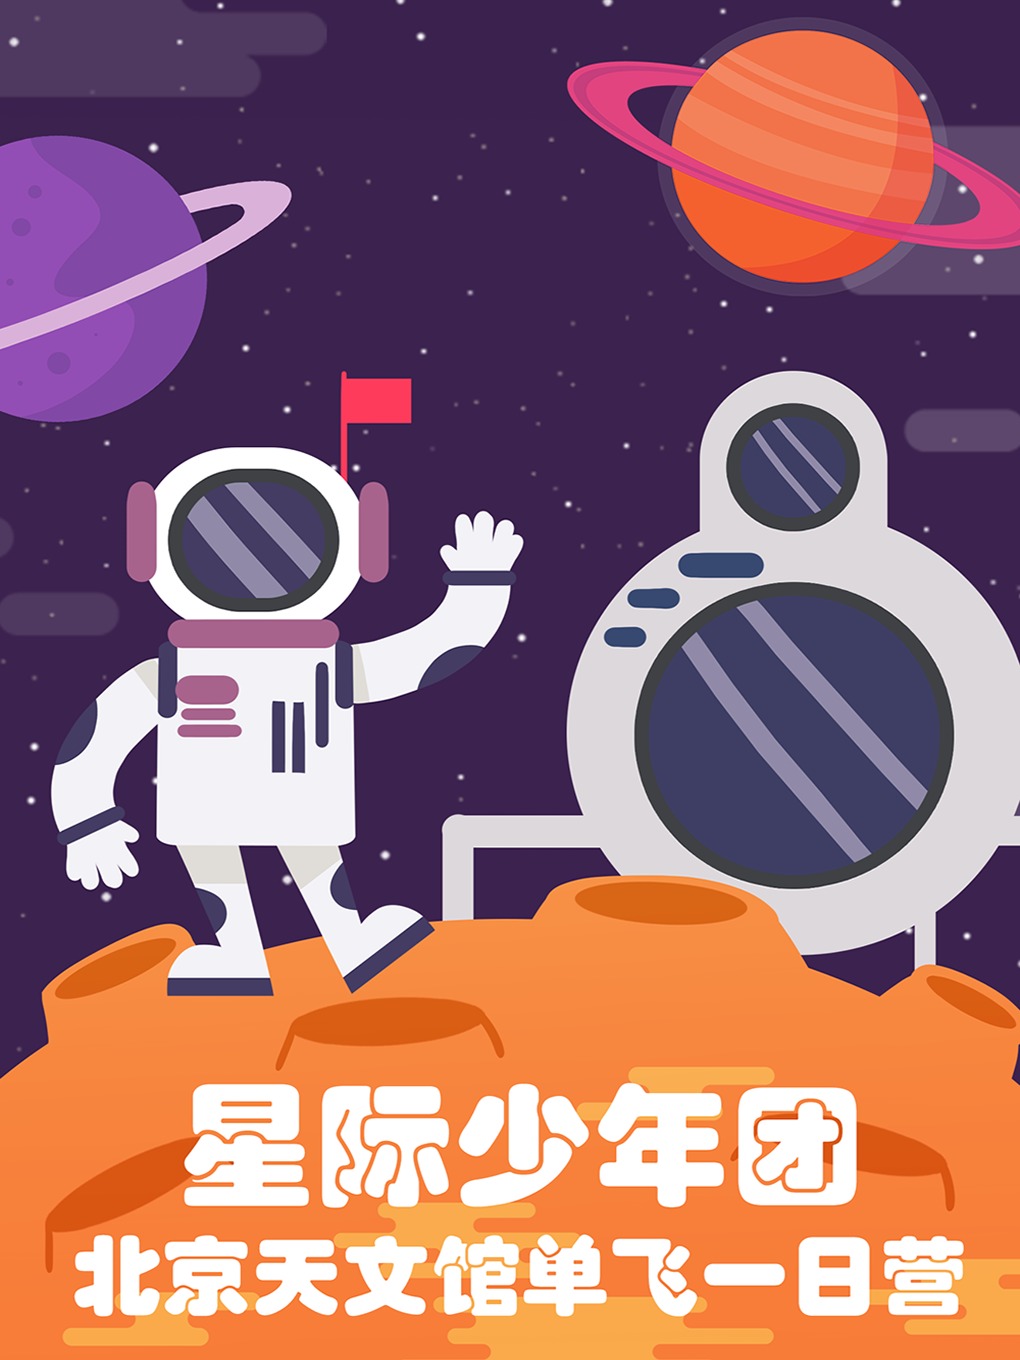 【星空少年团】北京天文馆儿童研学单飞一日营